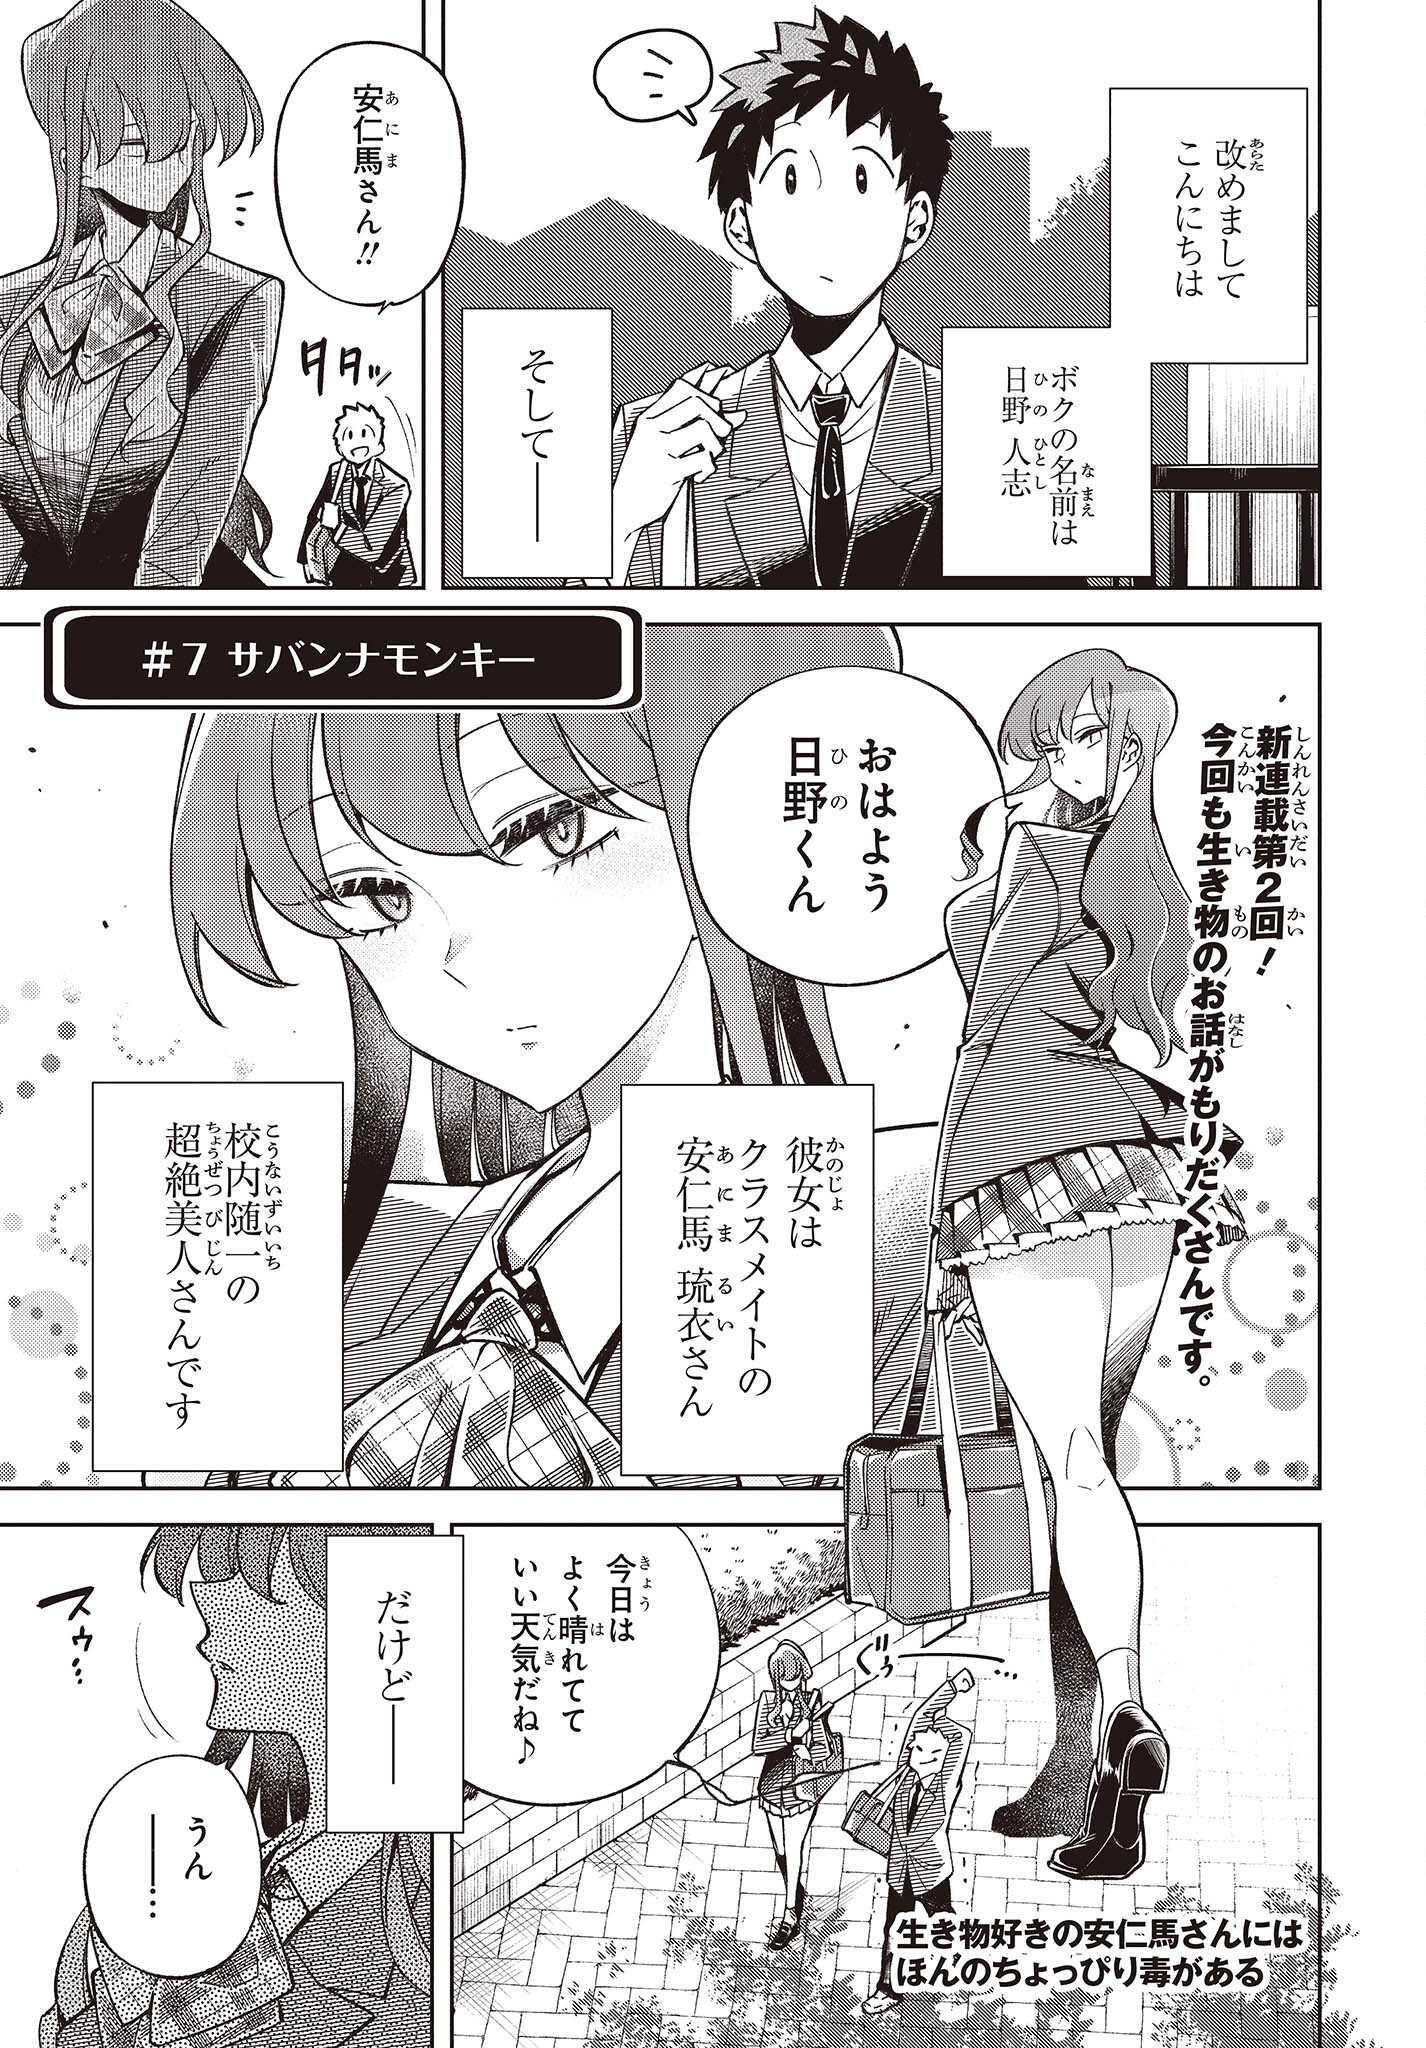 Ikimono-suki no Anima-san ni wa Honno Choppiri Doku ga aru - Chapter 2 - Page 1